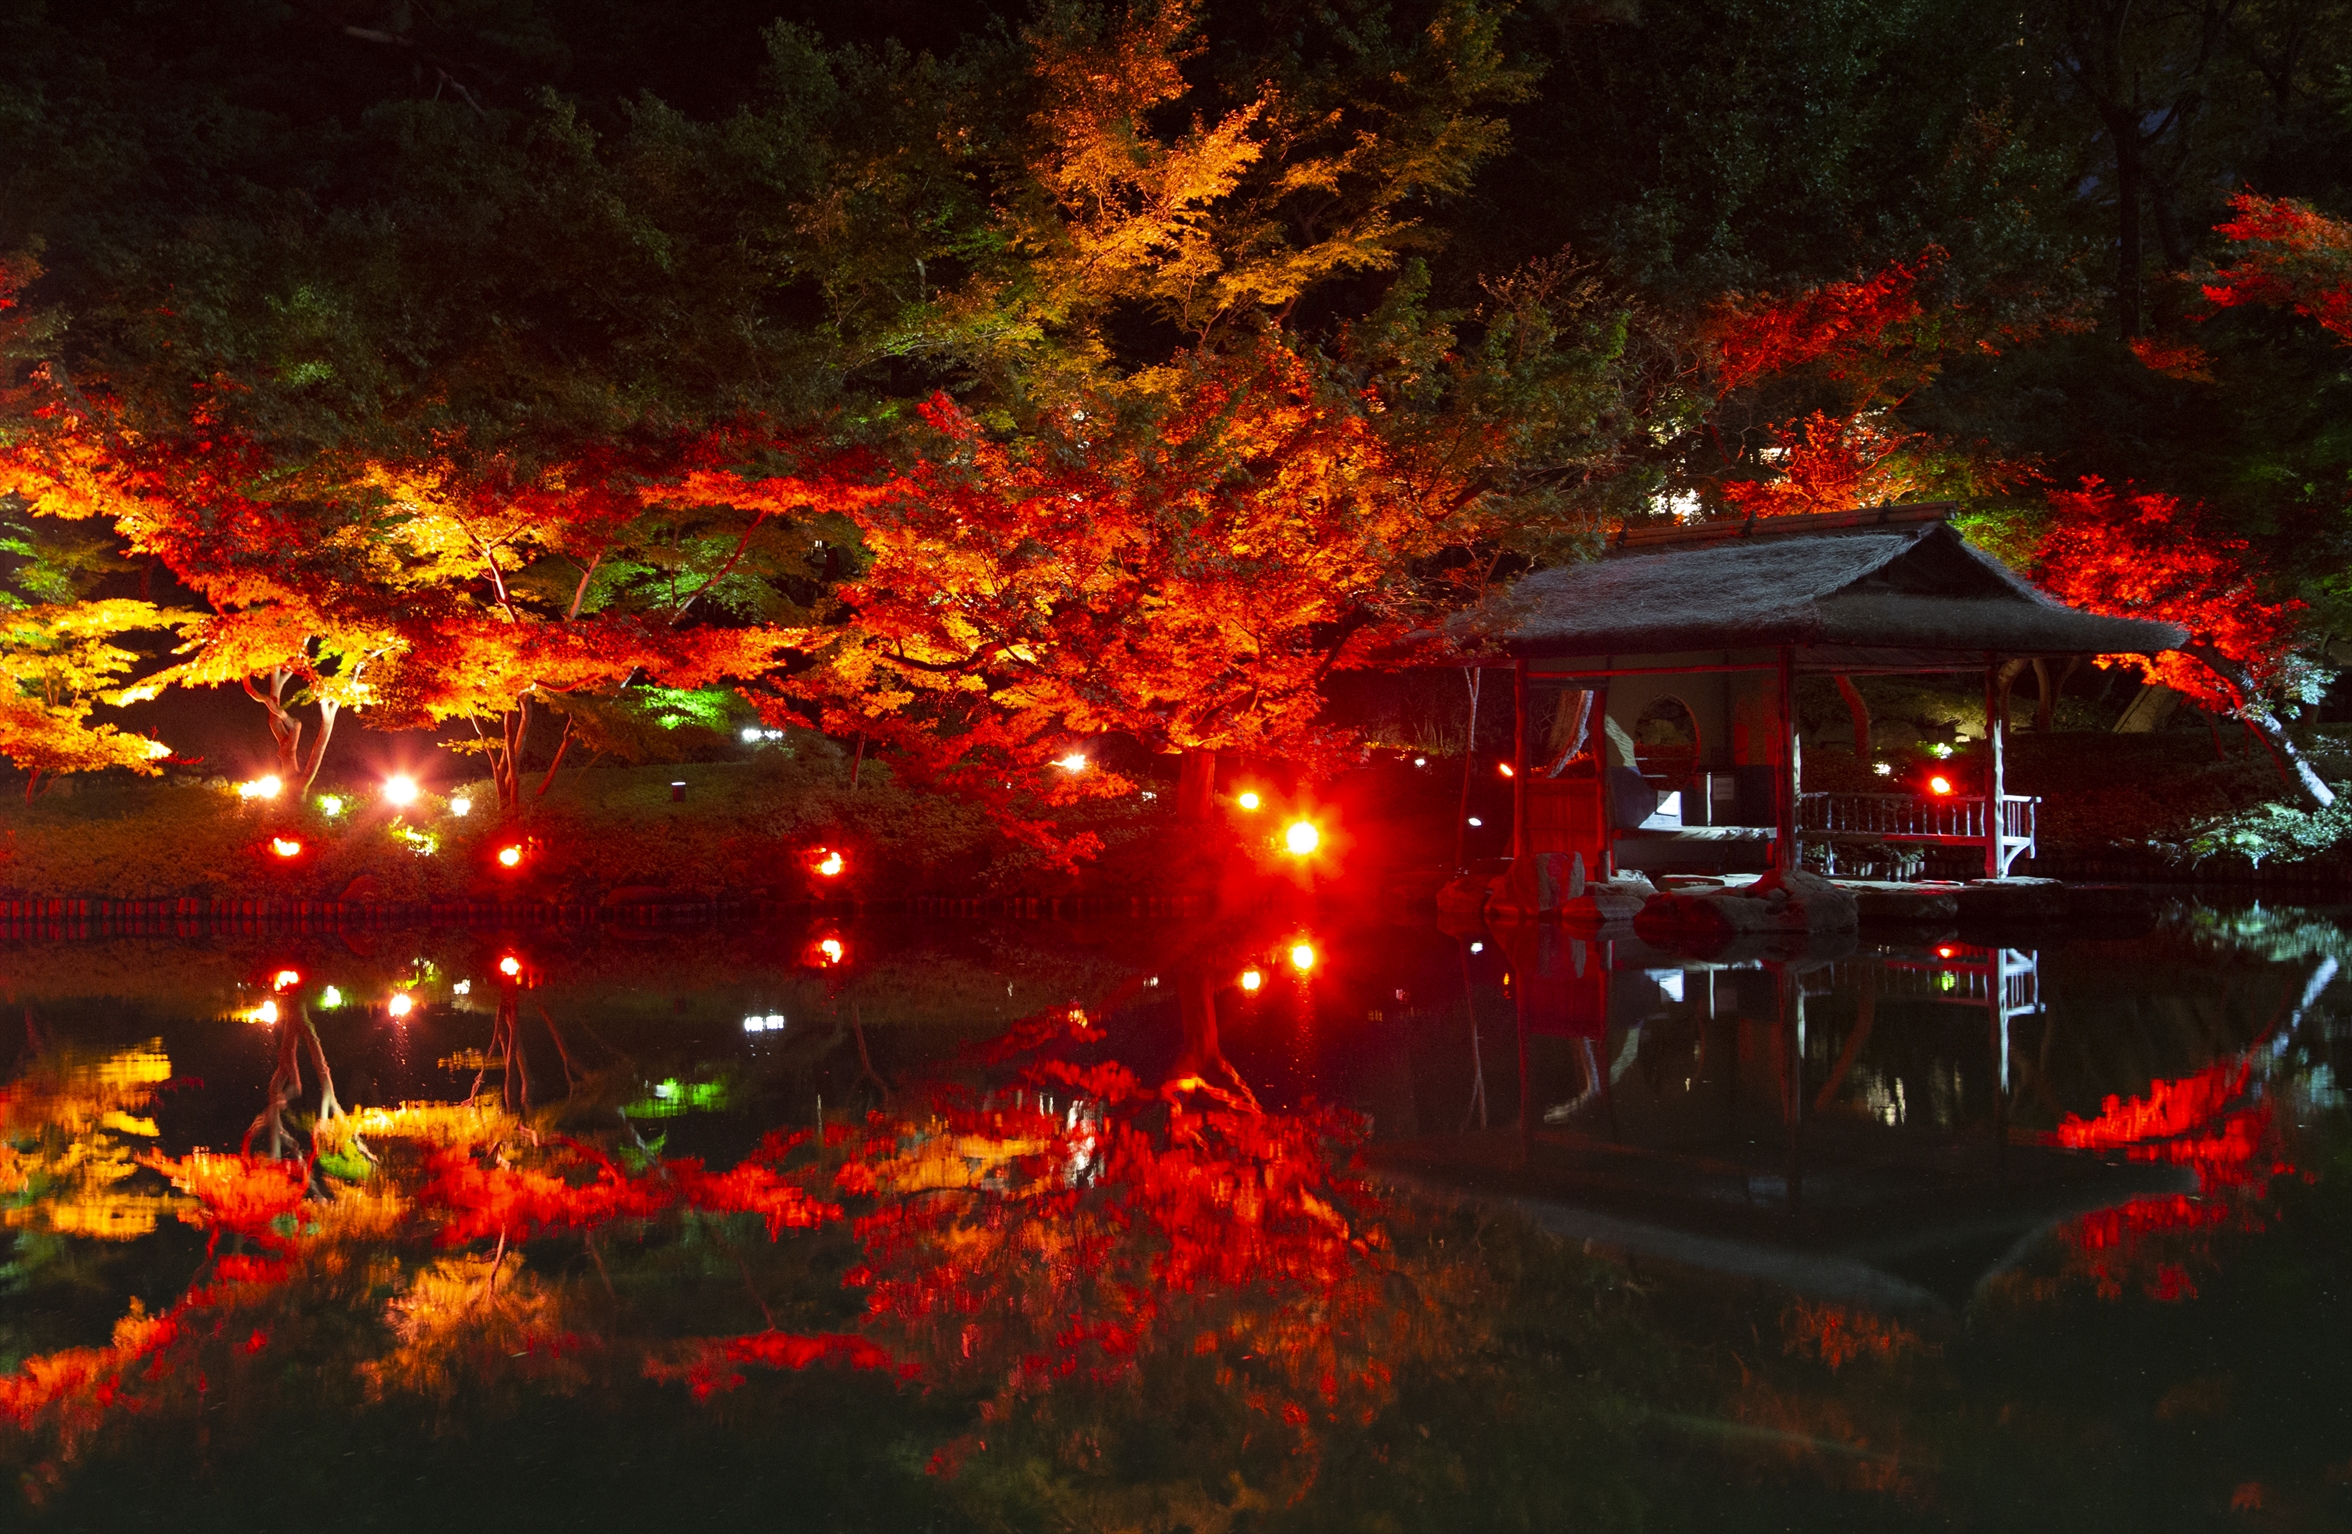 東京・八芳園で紅葉イルミネーションやポップアップバーなど秋祭りを開催